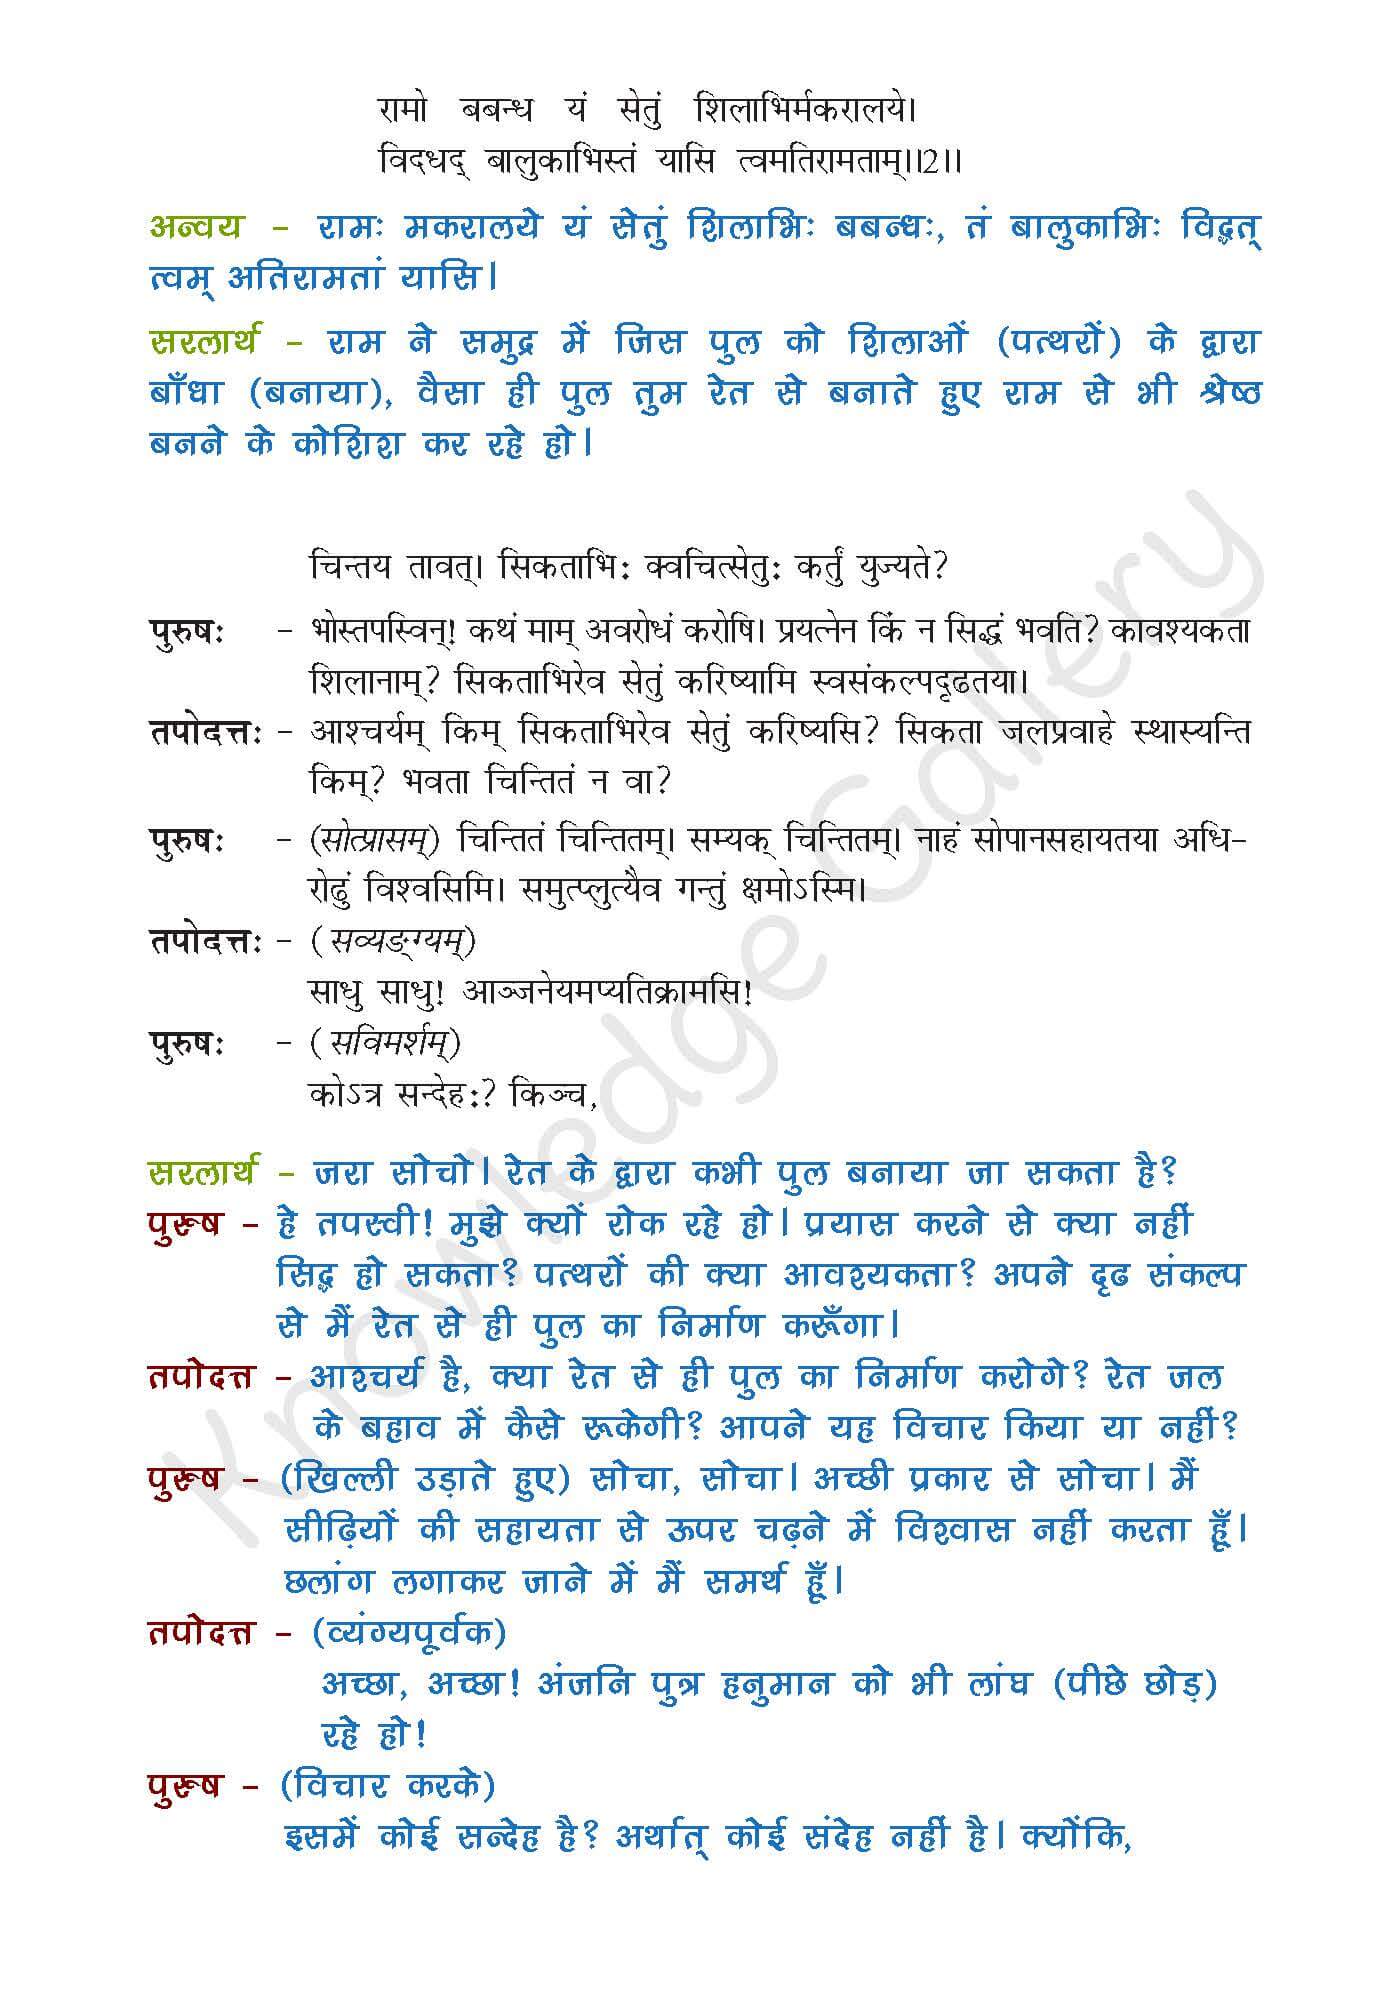 NCERT Solution For Class 9 Sanskrit Chapter 7 part 3